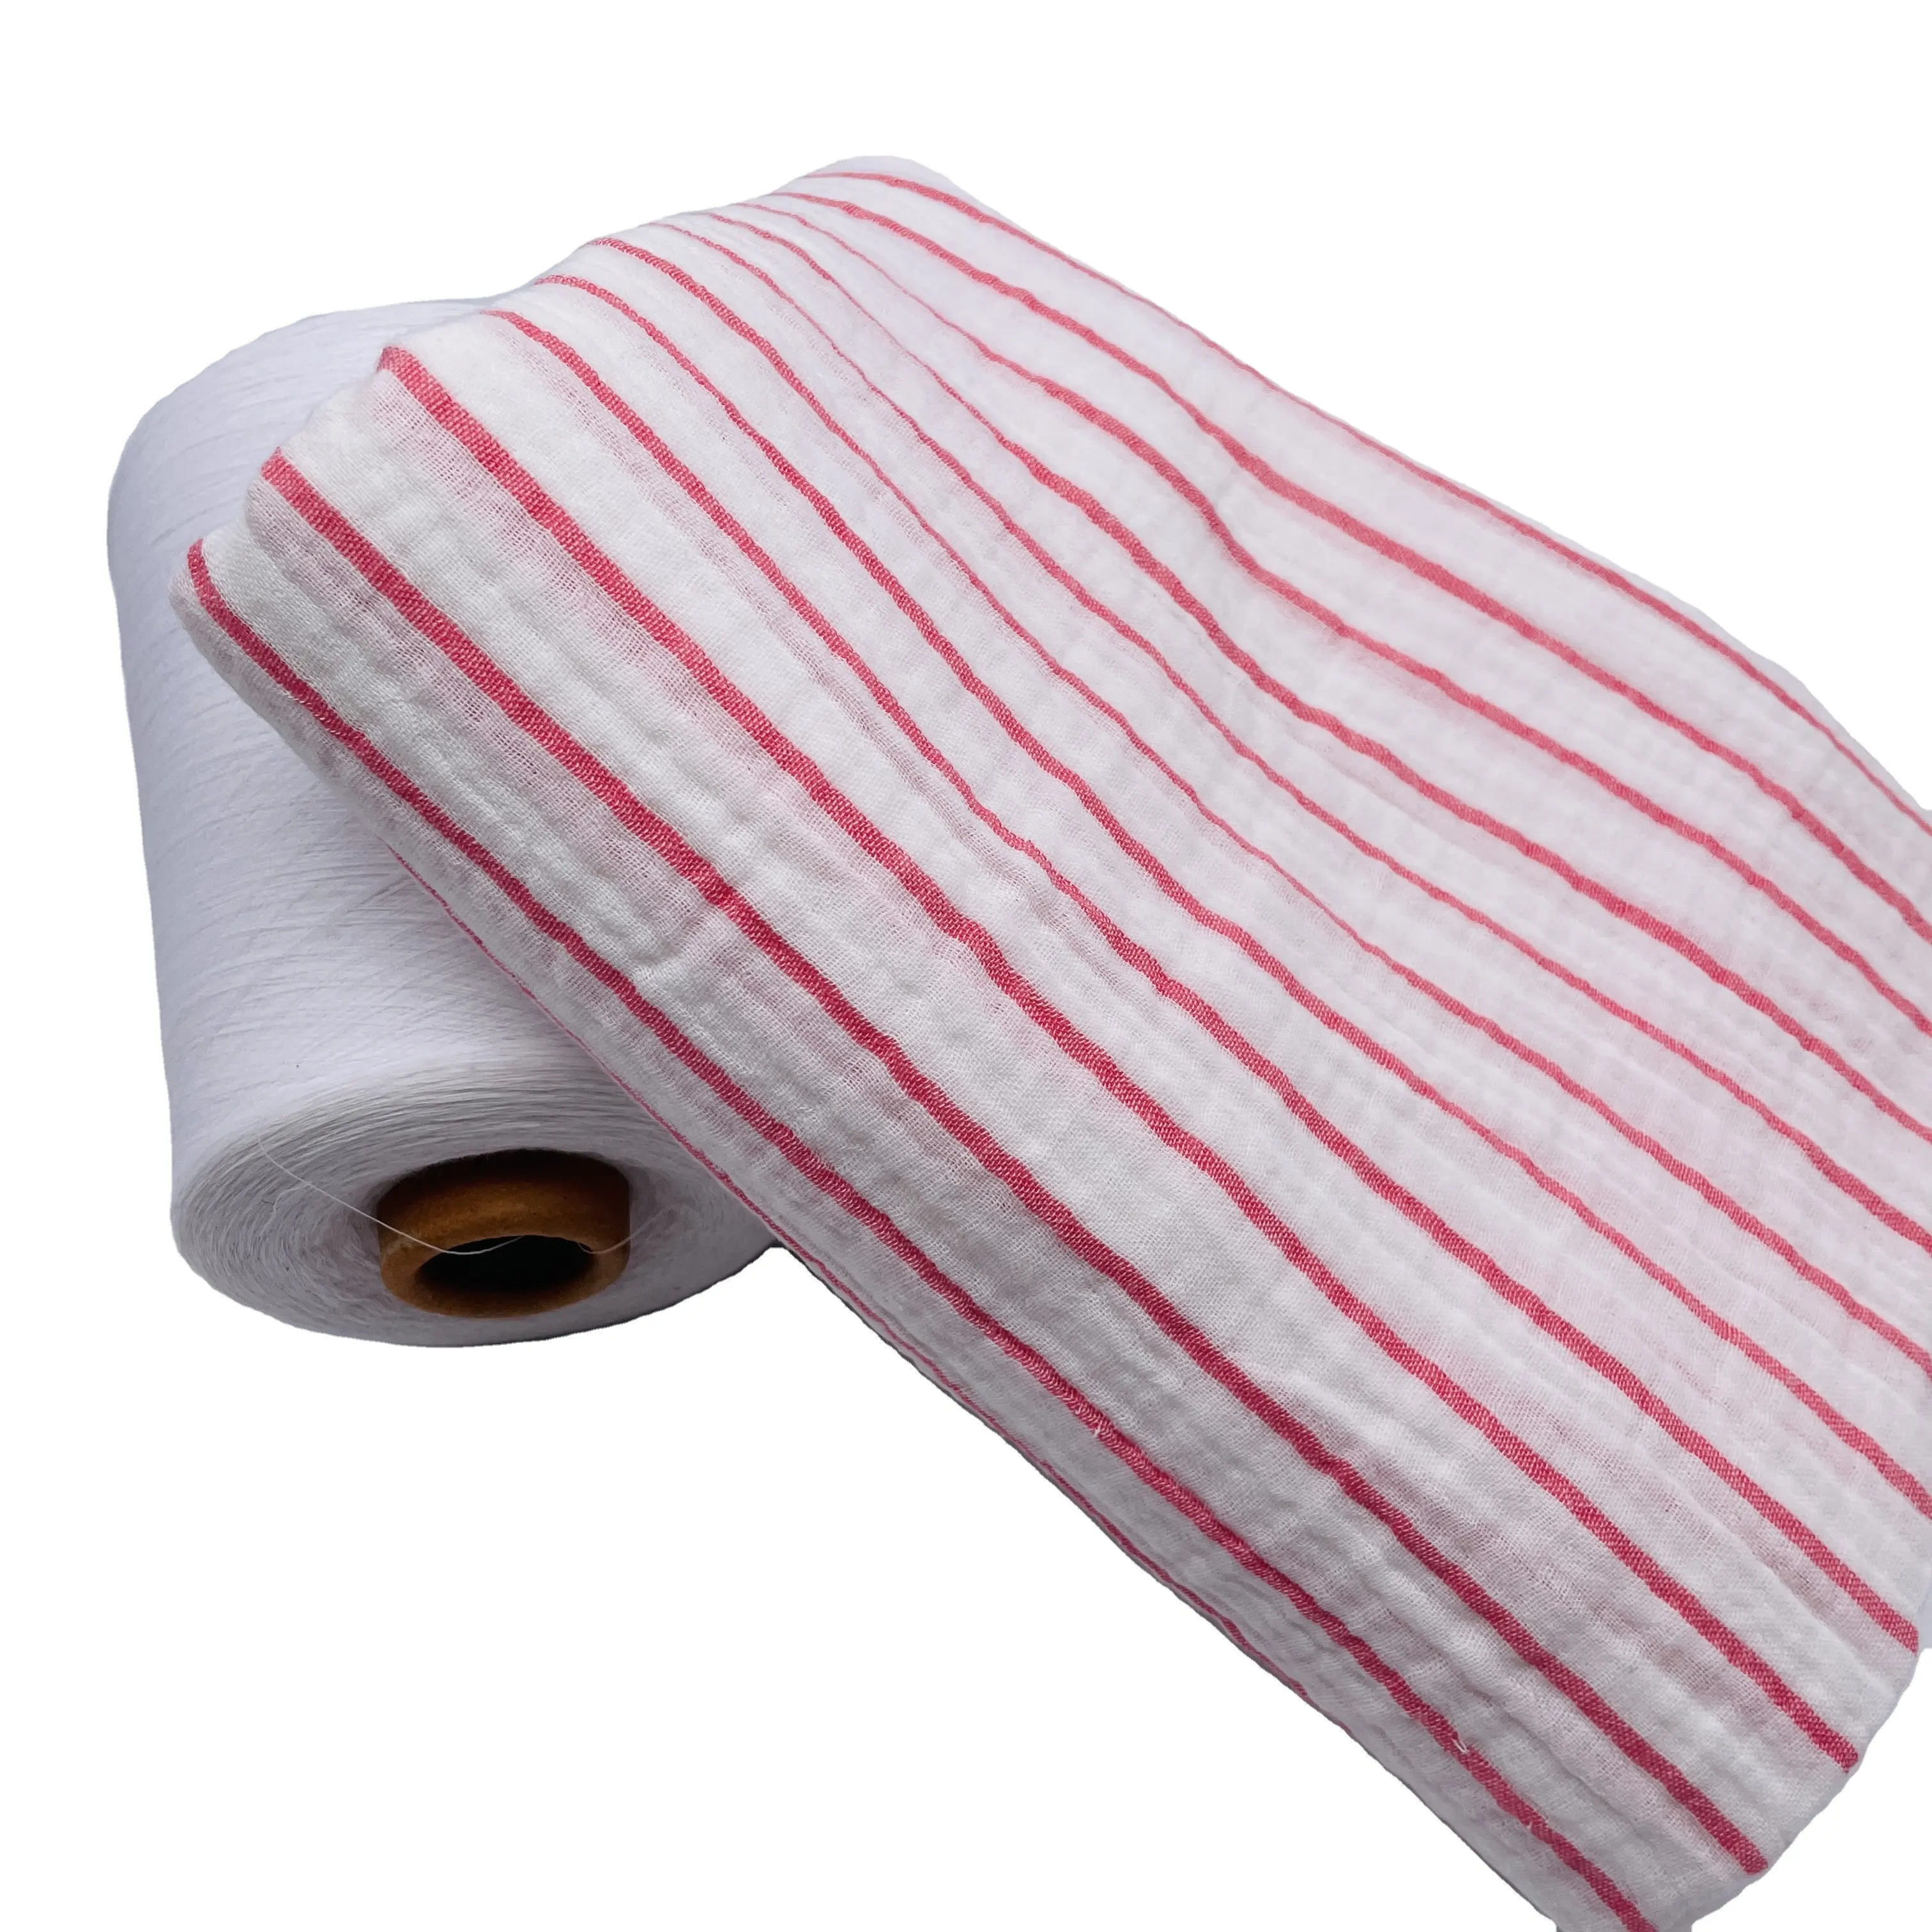 Novo design da moda, tecido de importação de crepe de dupla camada tingido com fio 100% algodão de boa qualidade da Nantong, tecidos personalizados da China